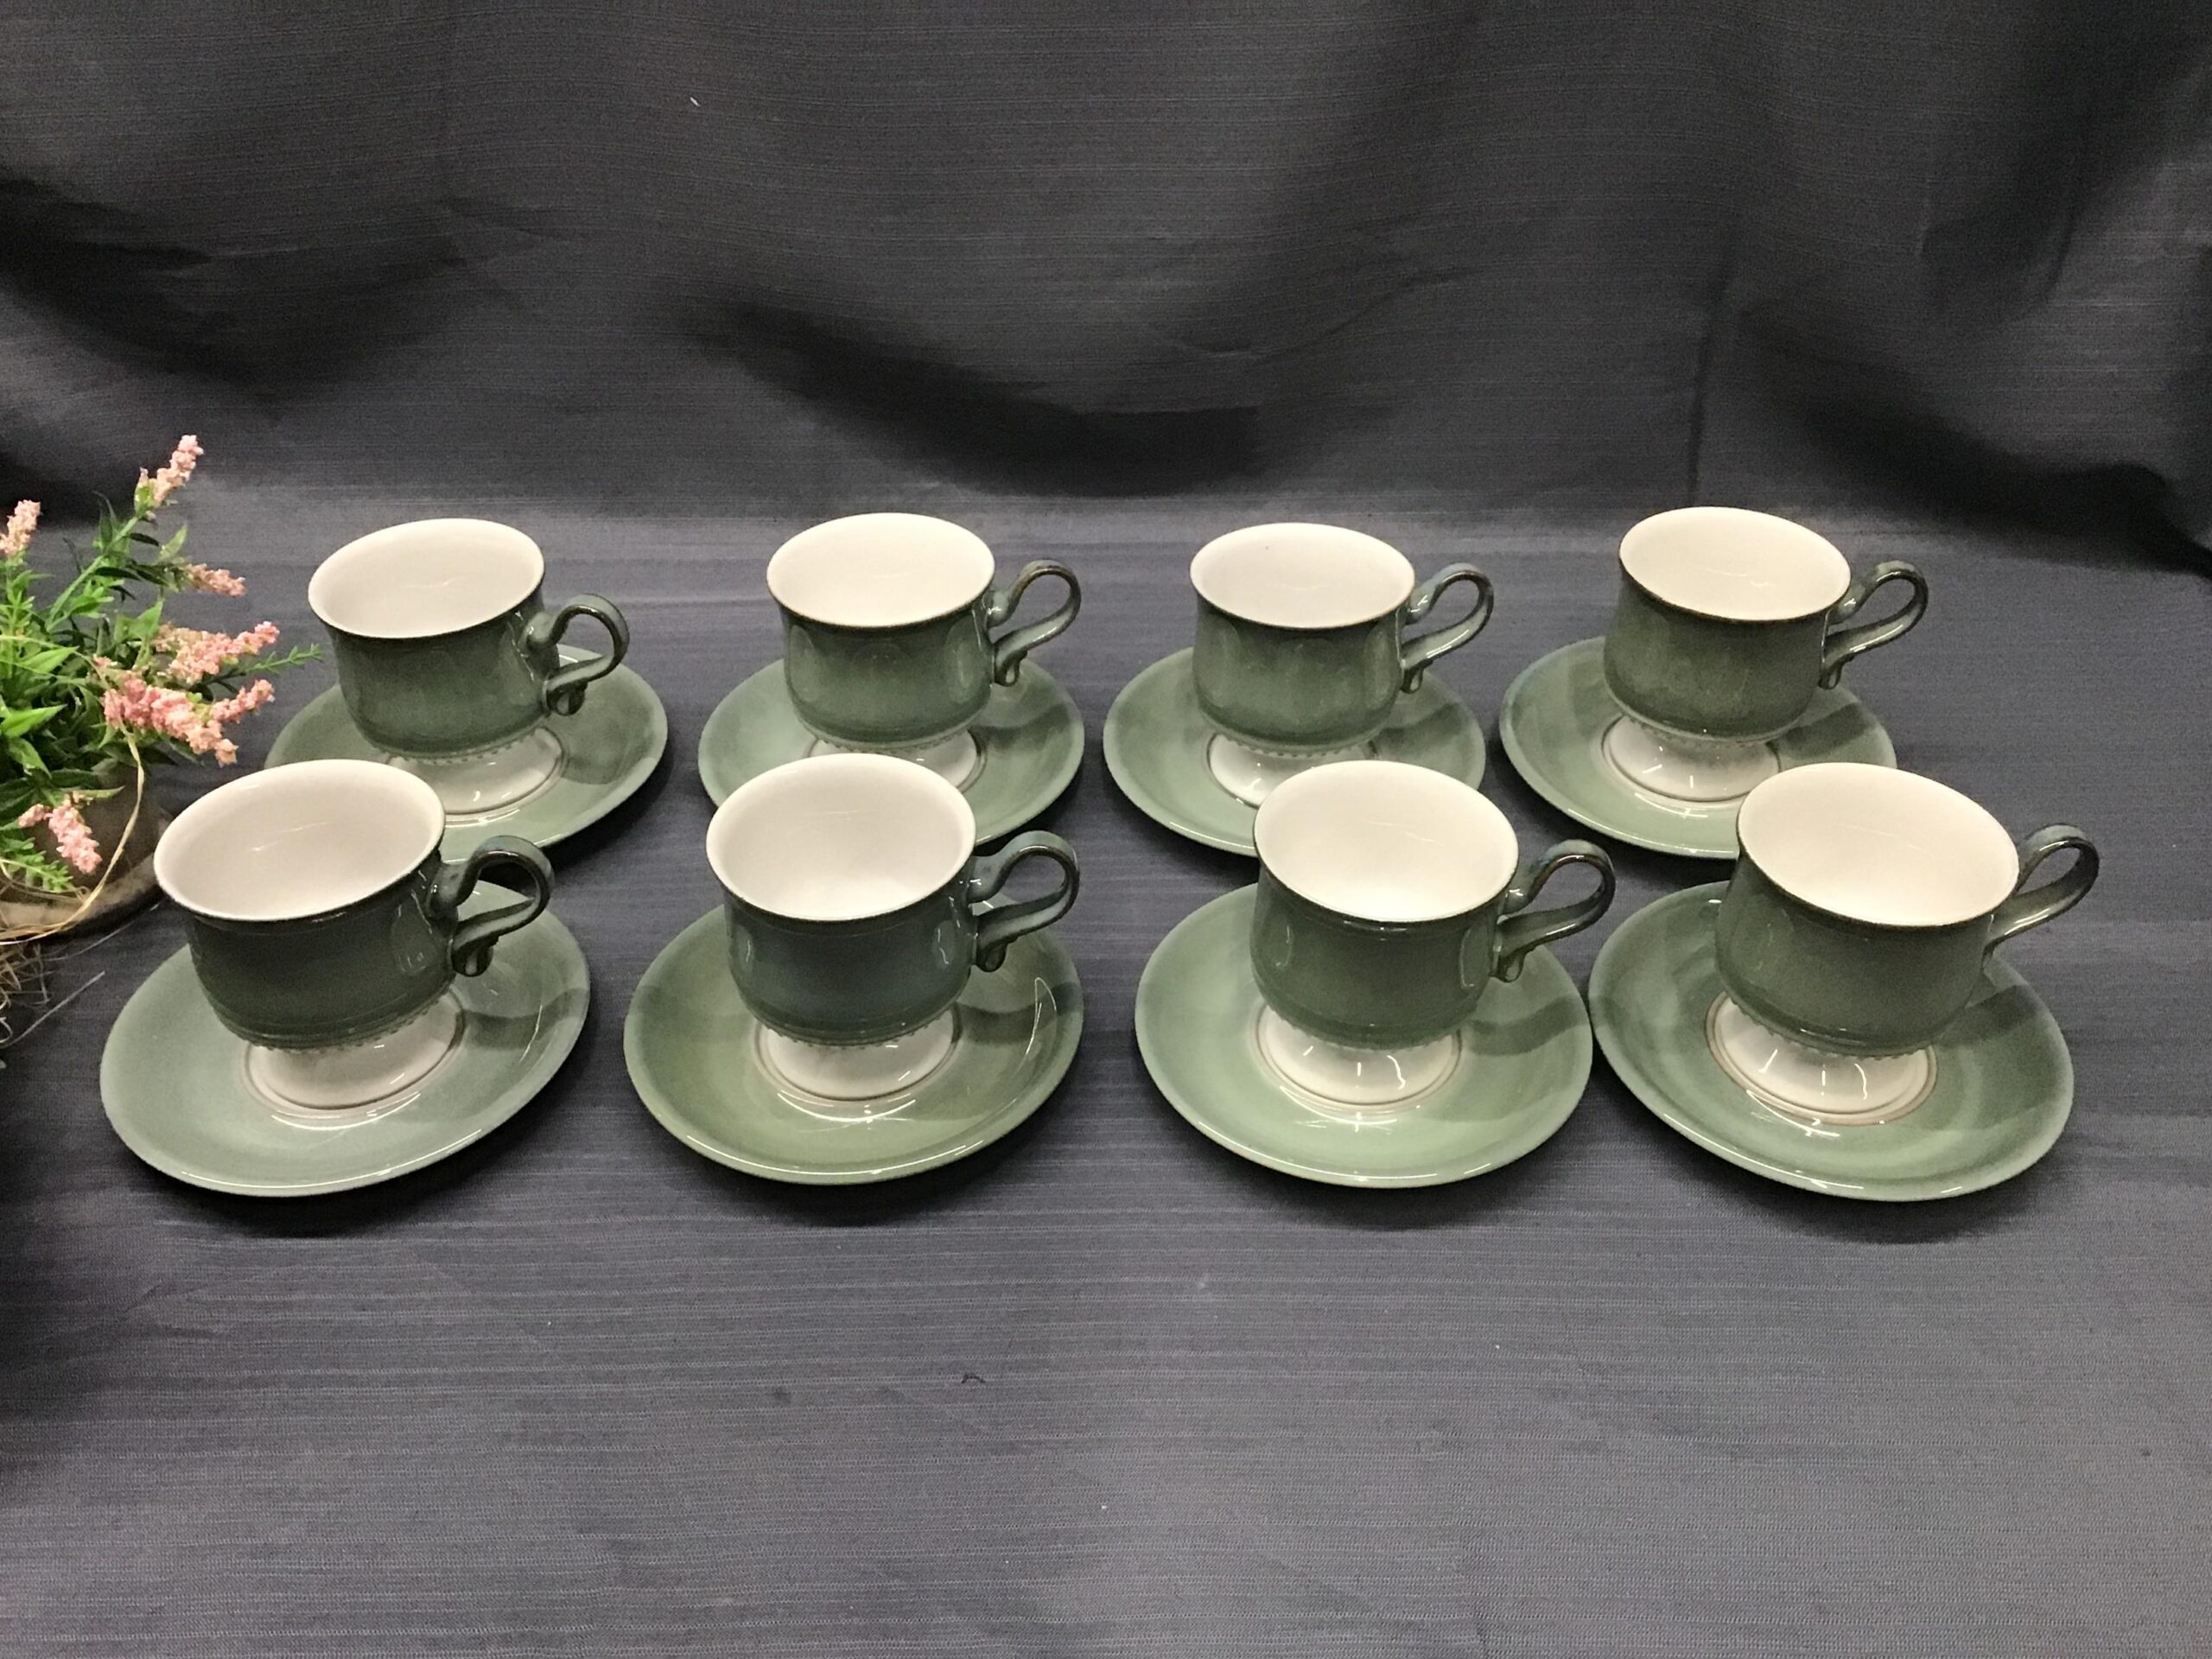 DENBY “Langley-Seville” (Green) Cups & Saucers Set of 8